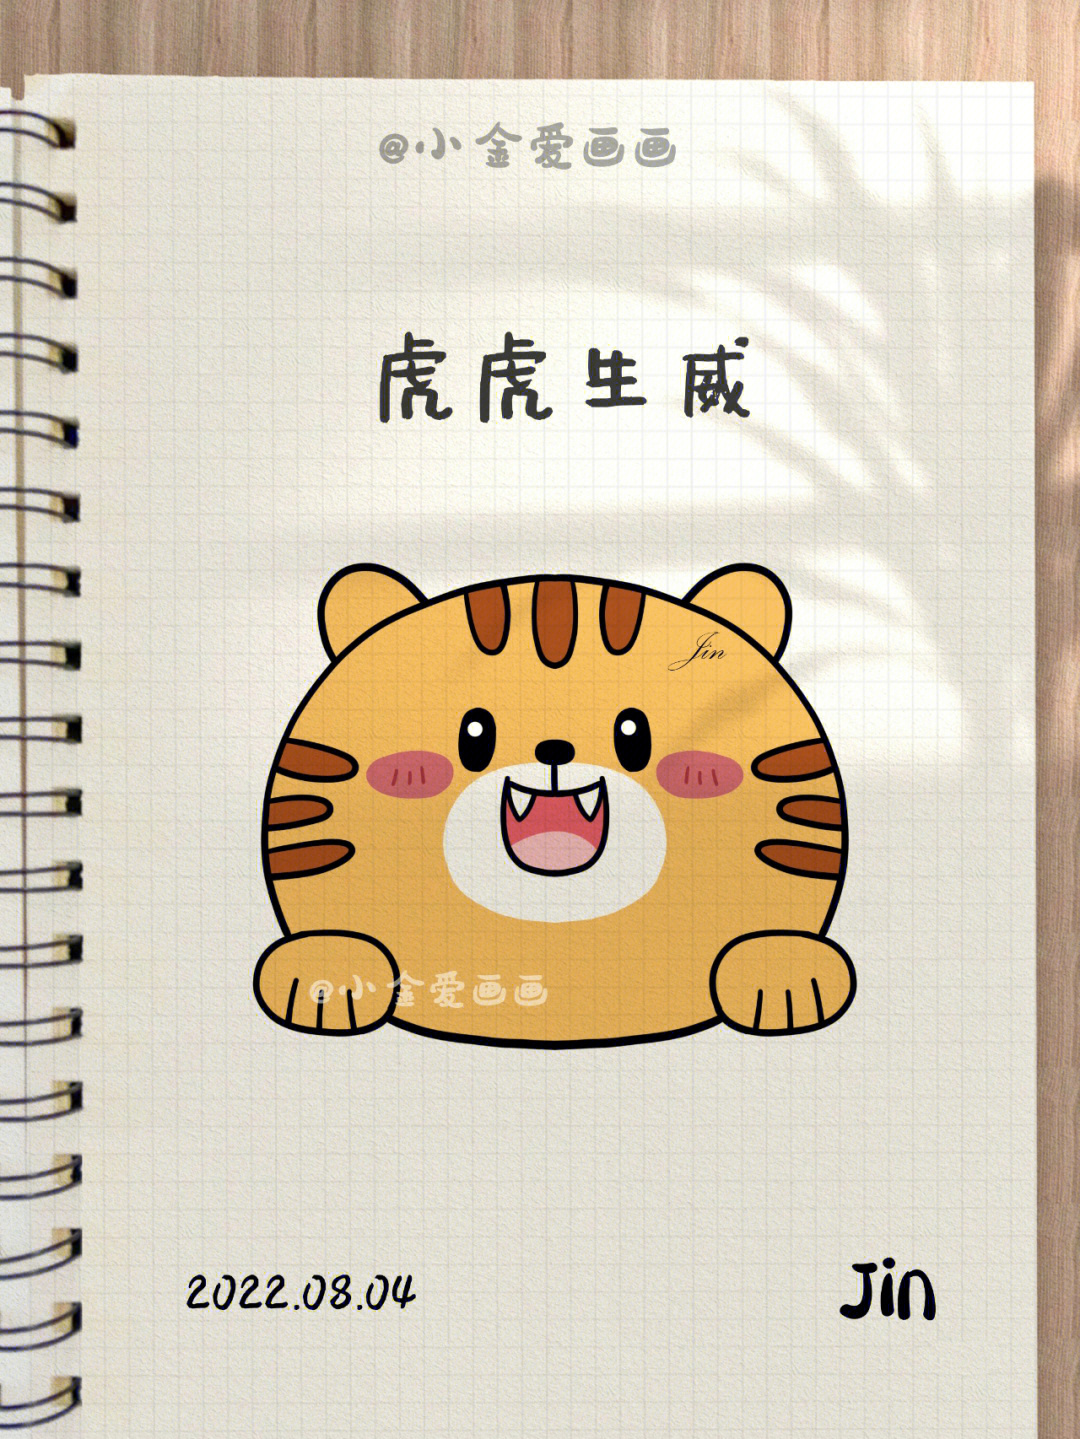 老虎的简笔画简单可爱图片